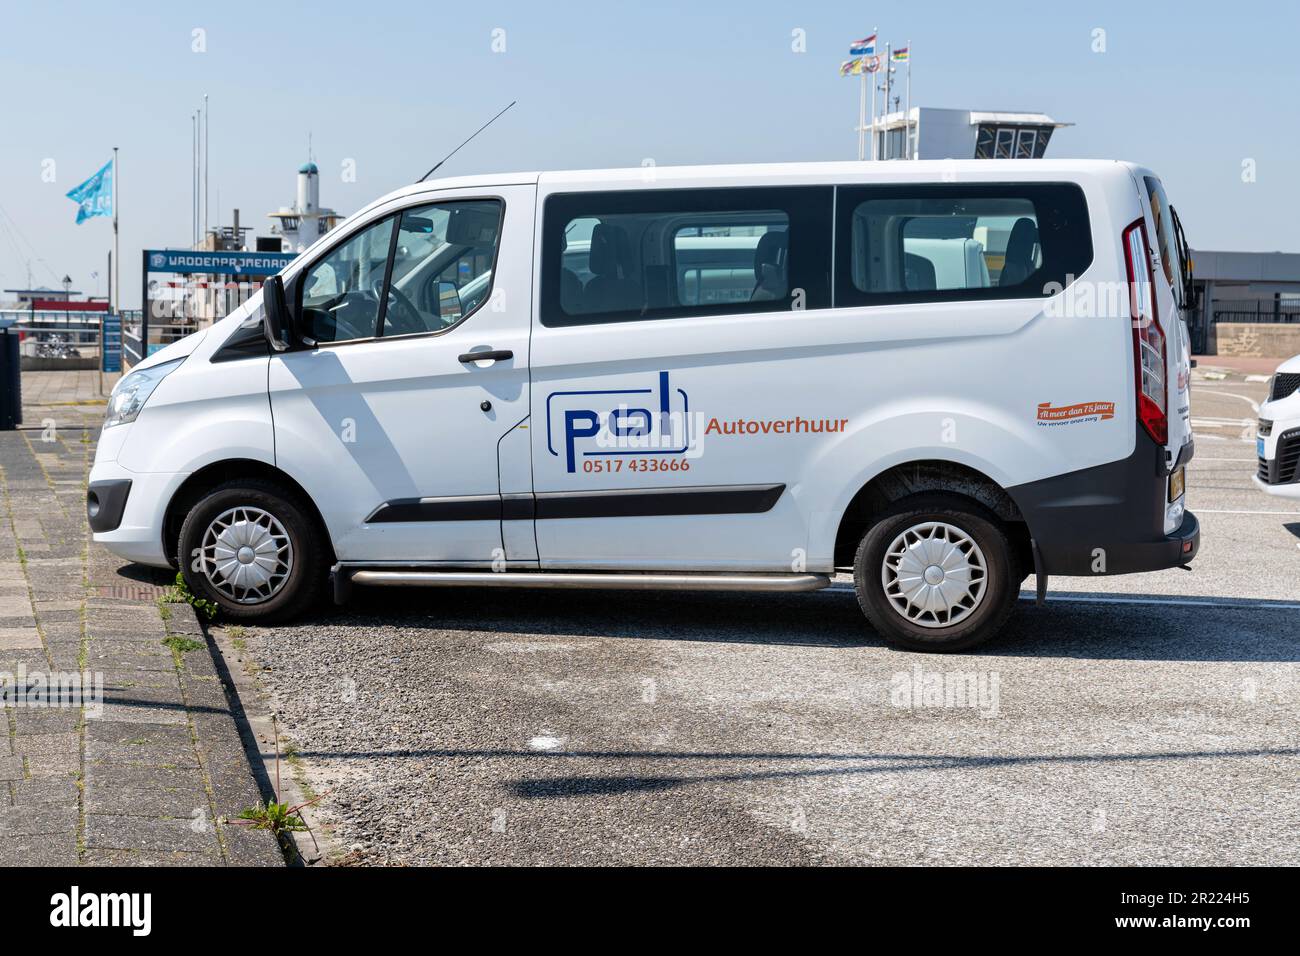 Pol Autoverhuur Ford Transit minibus personnalisé à Harlingen, pays-Bas Banque D'Images